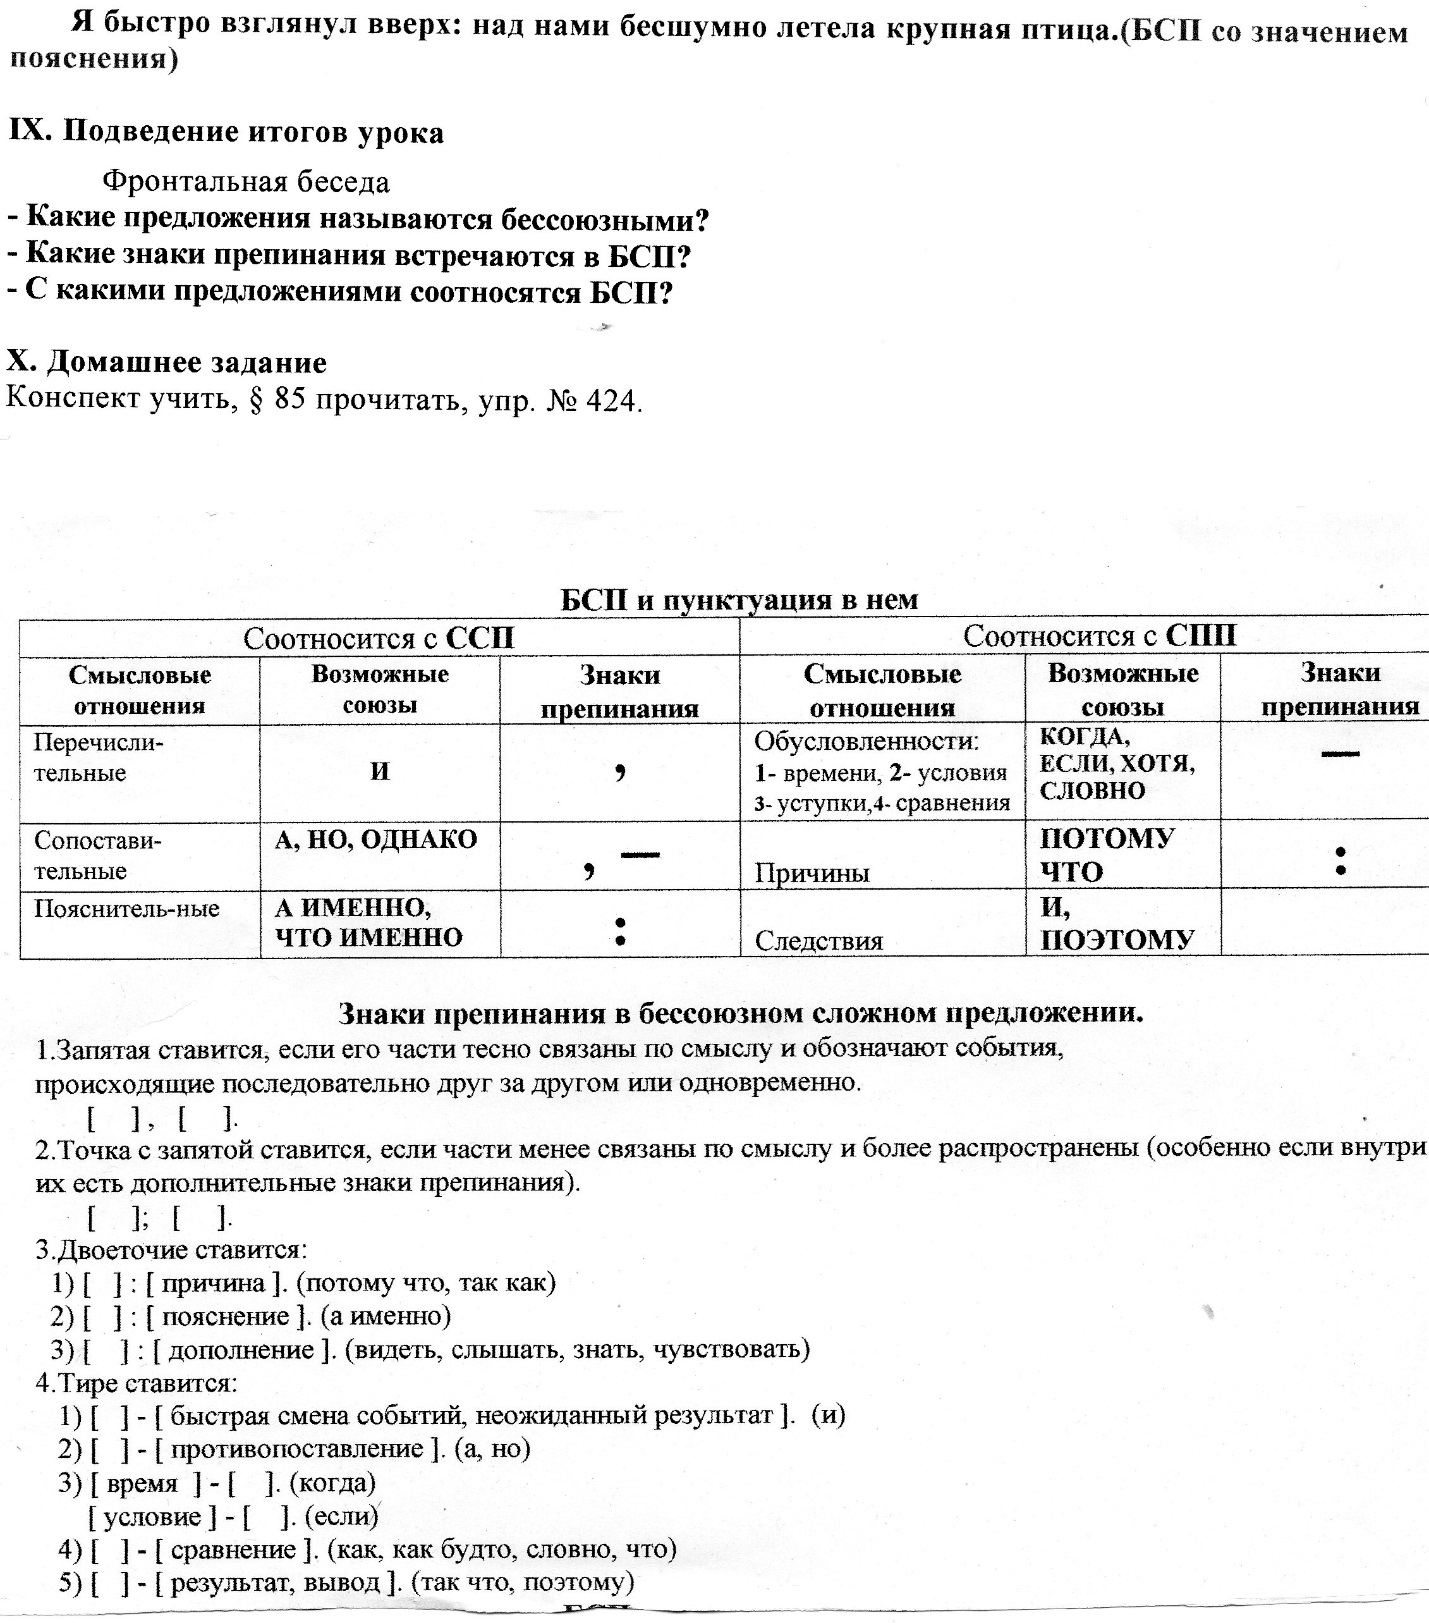 Конспект урока по русскому языку на тему Бессоюзное сложное предложение (10 класс)